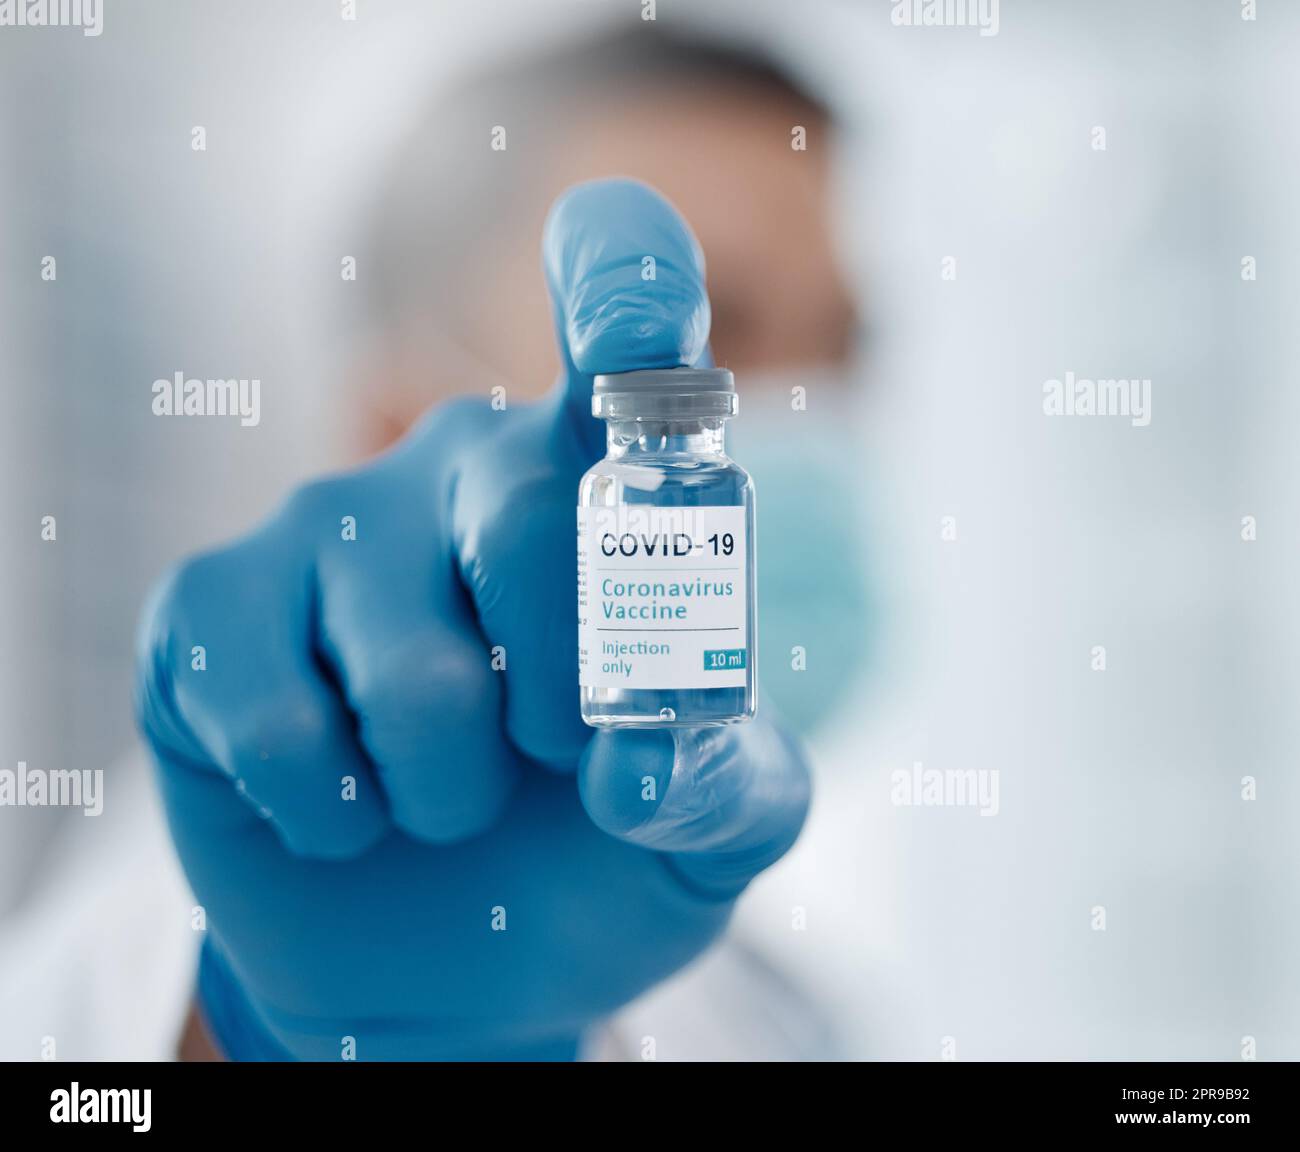 Die Heilung. Nahaufnahme einer Flasche Covid-19-Impfstoff, die von einem nicht erkennbaren männlichen Arzt gegen den Bildschirm gehalten wird. Stockfoto